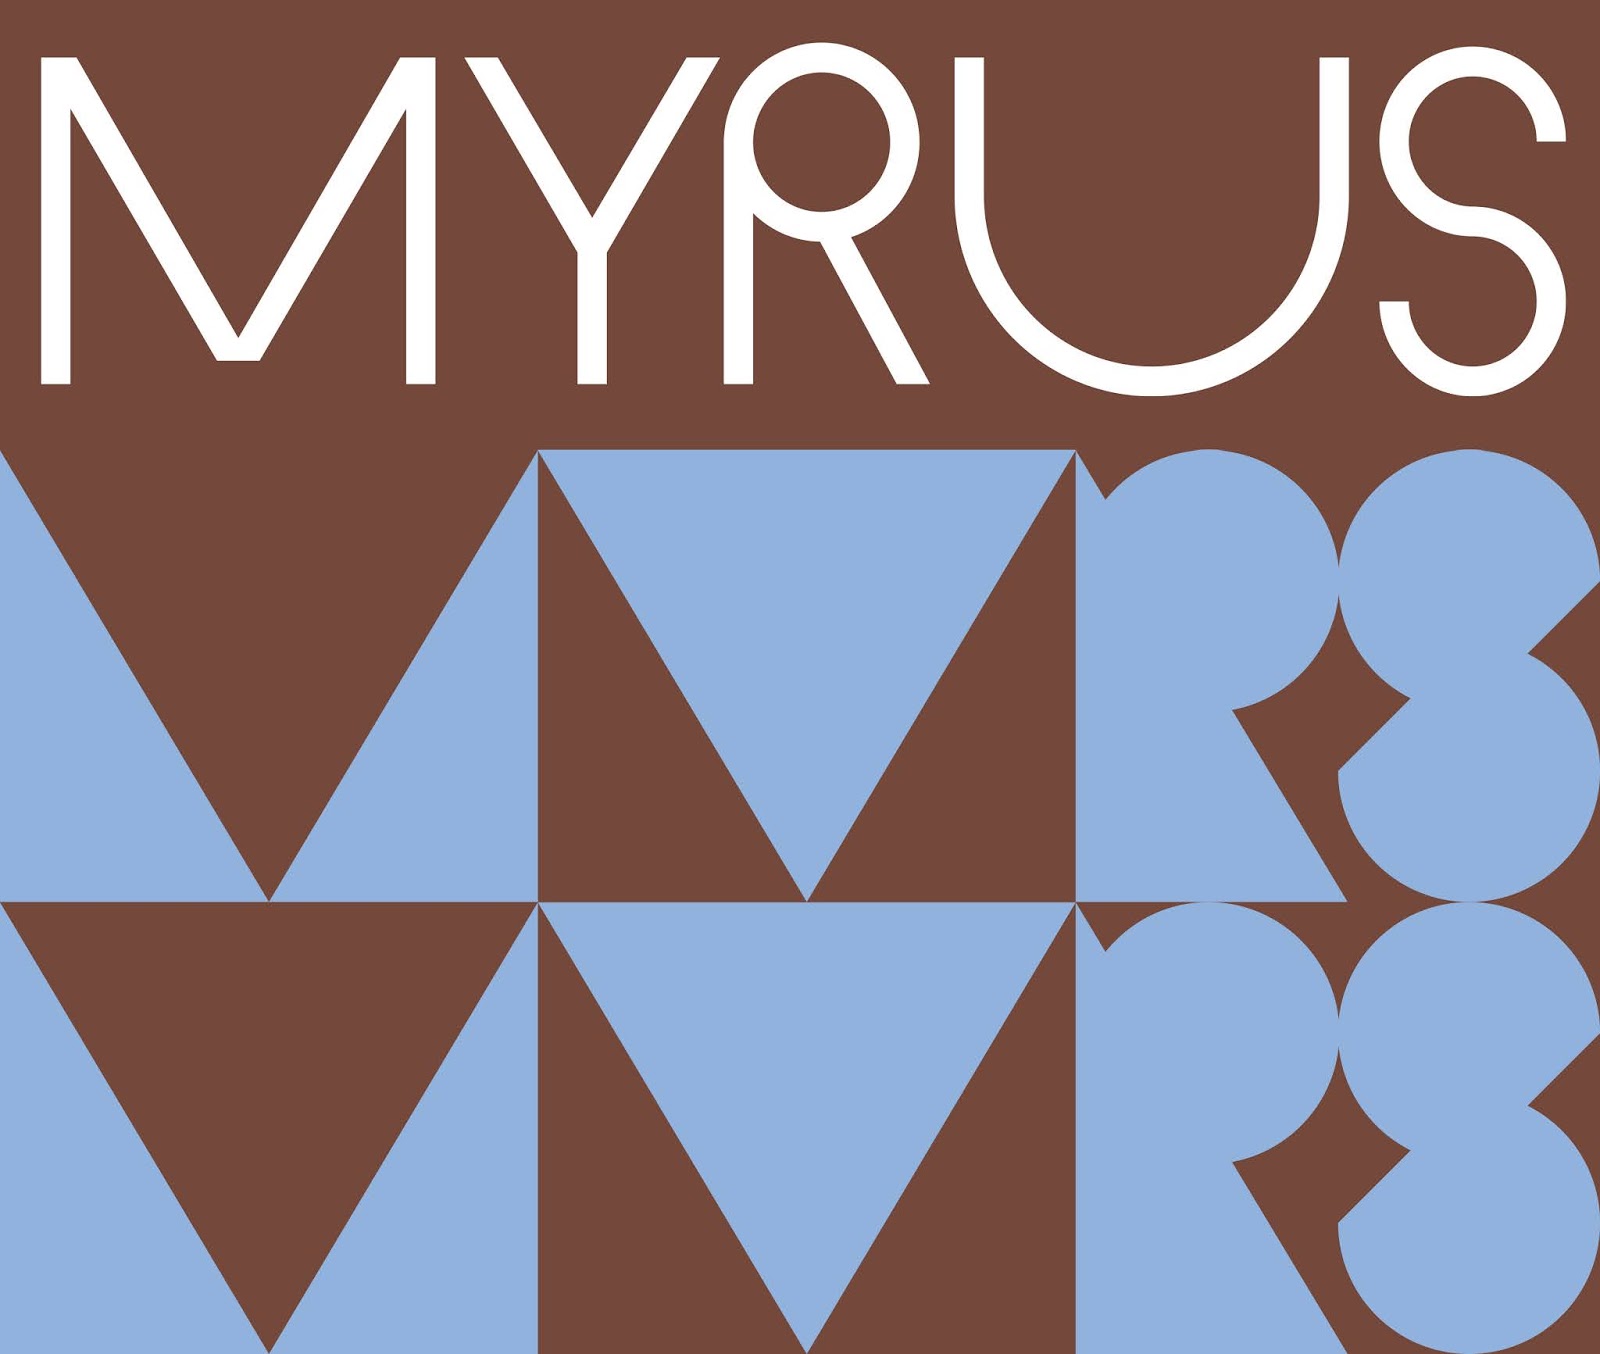 时尚创意的MYRUS咖啡概念包装设计作品欣赏。